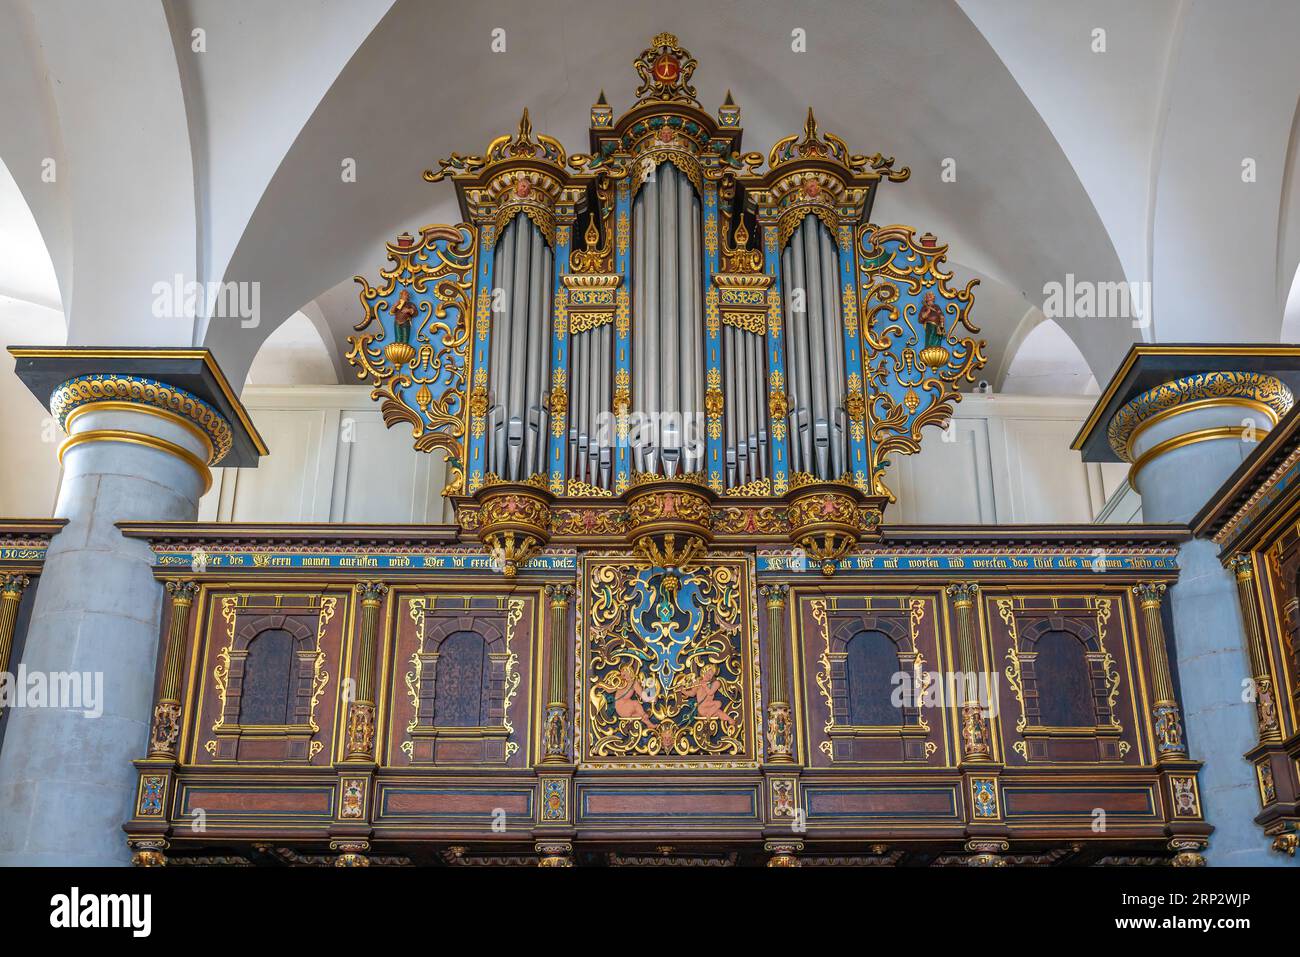 Organo a pipa nella cappella del castello di Kronborg - Helsingor, Danimarca Foto Stock